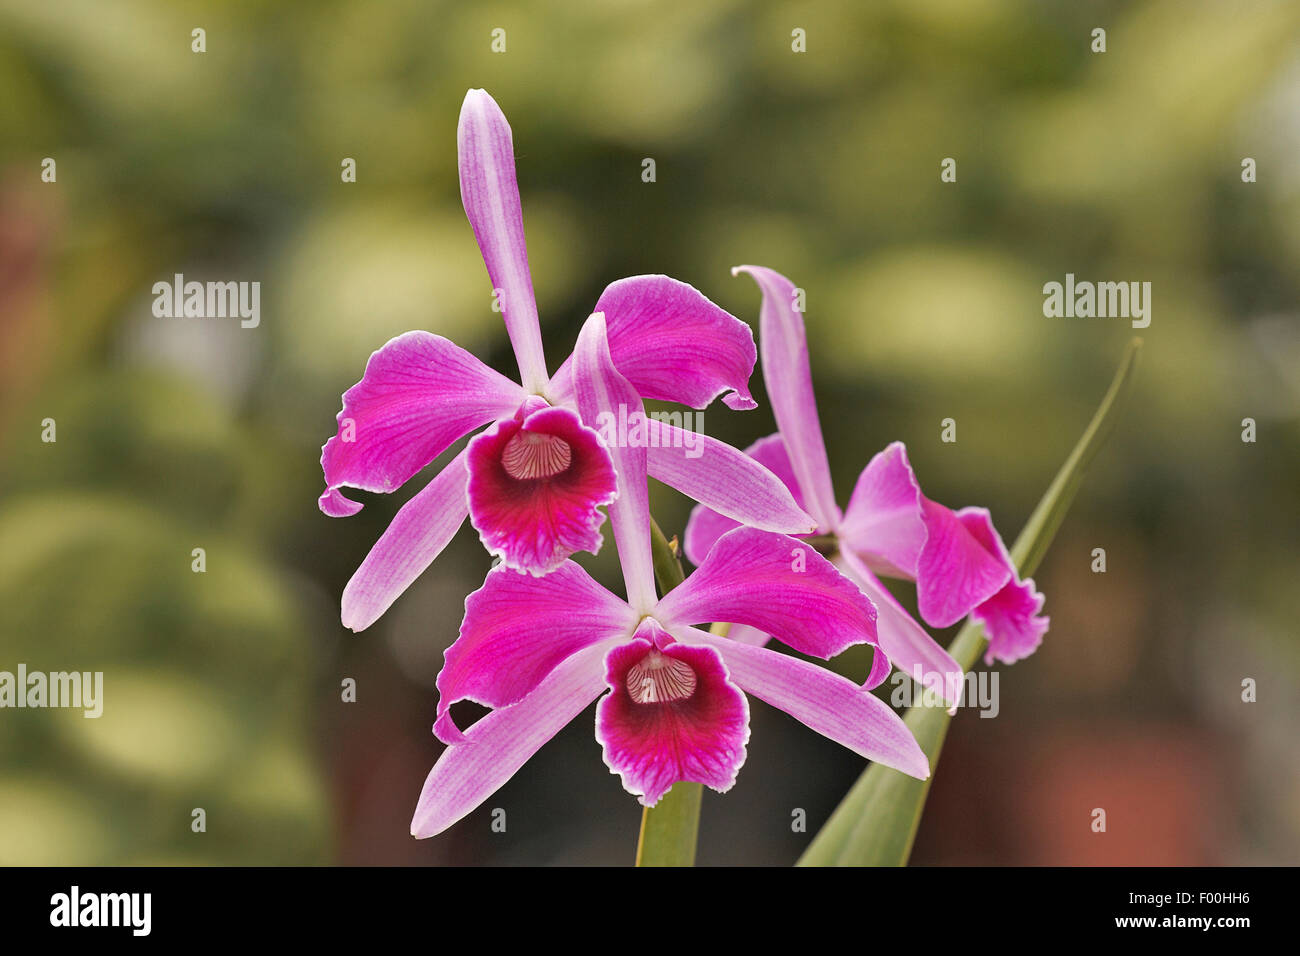 Cattleya orchid (Cattleya purpurata pseudotipo 'Millionaire', Cattleya purpurata pseudotipo Millionaire), flowers Stock Photo